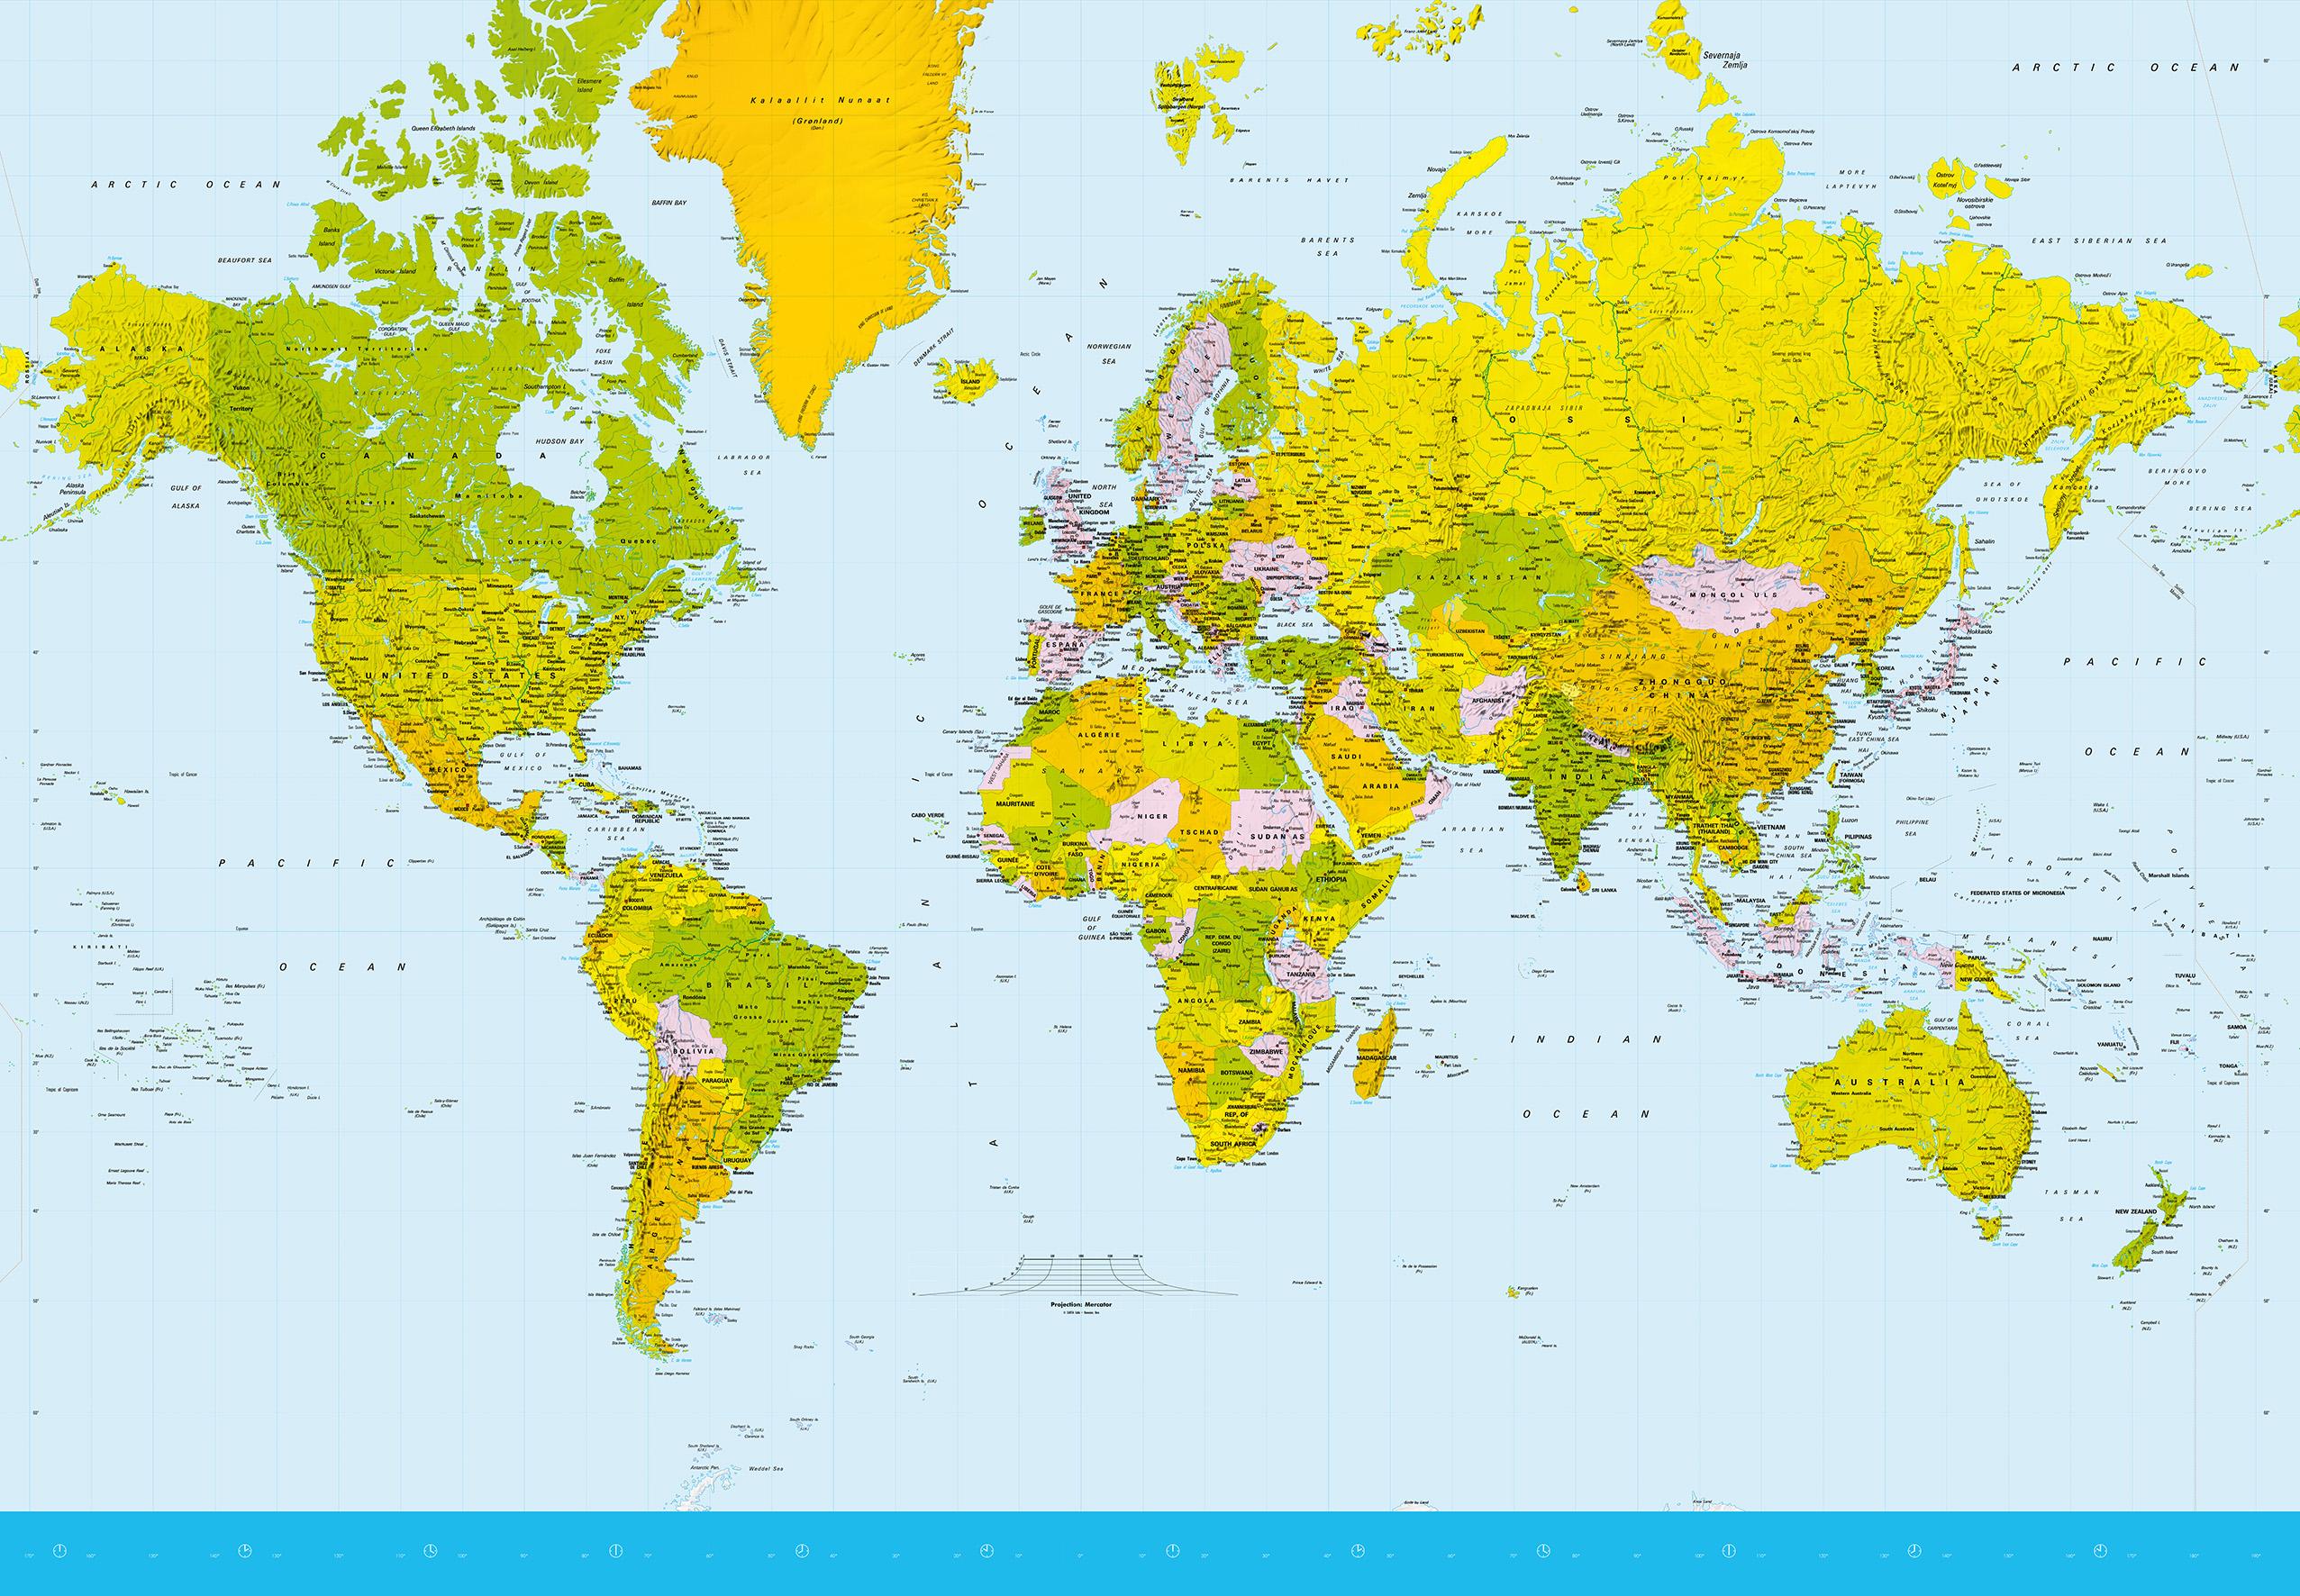 Karta. Карта мира в цвете. Карта мира цветная. Разные карты мира. Карта мира хорошего качества для распечатки.